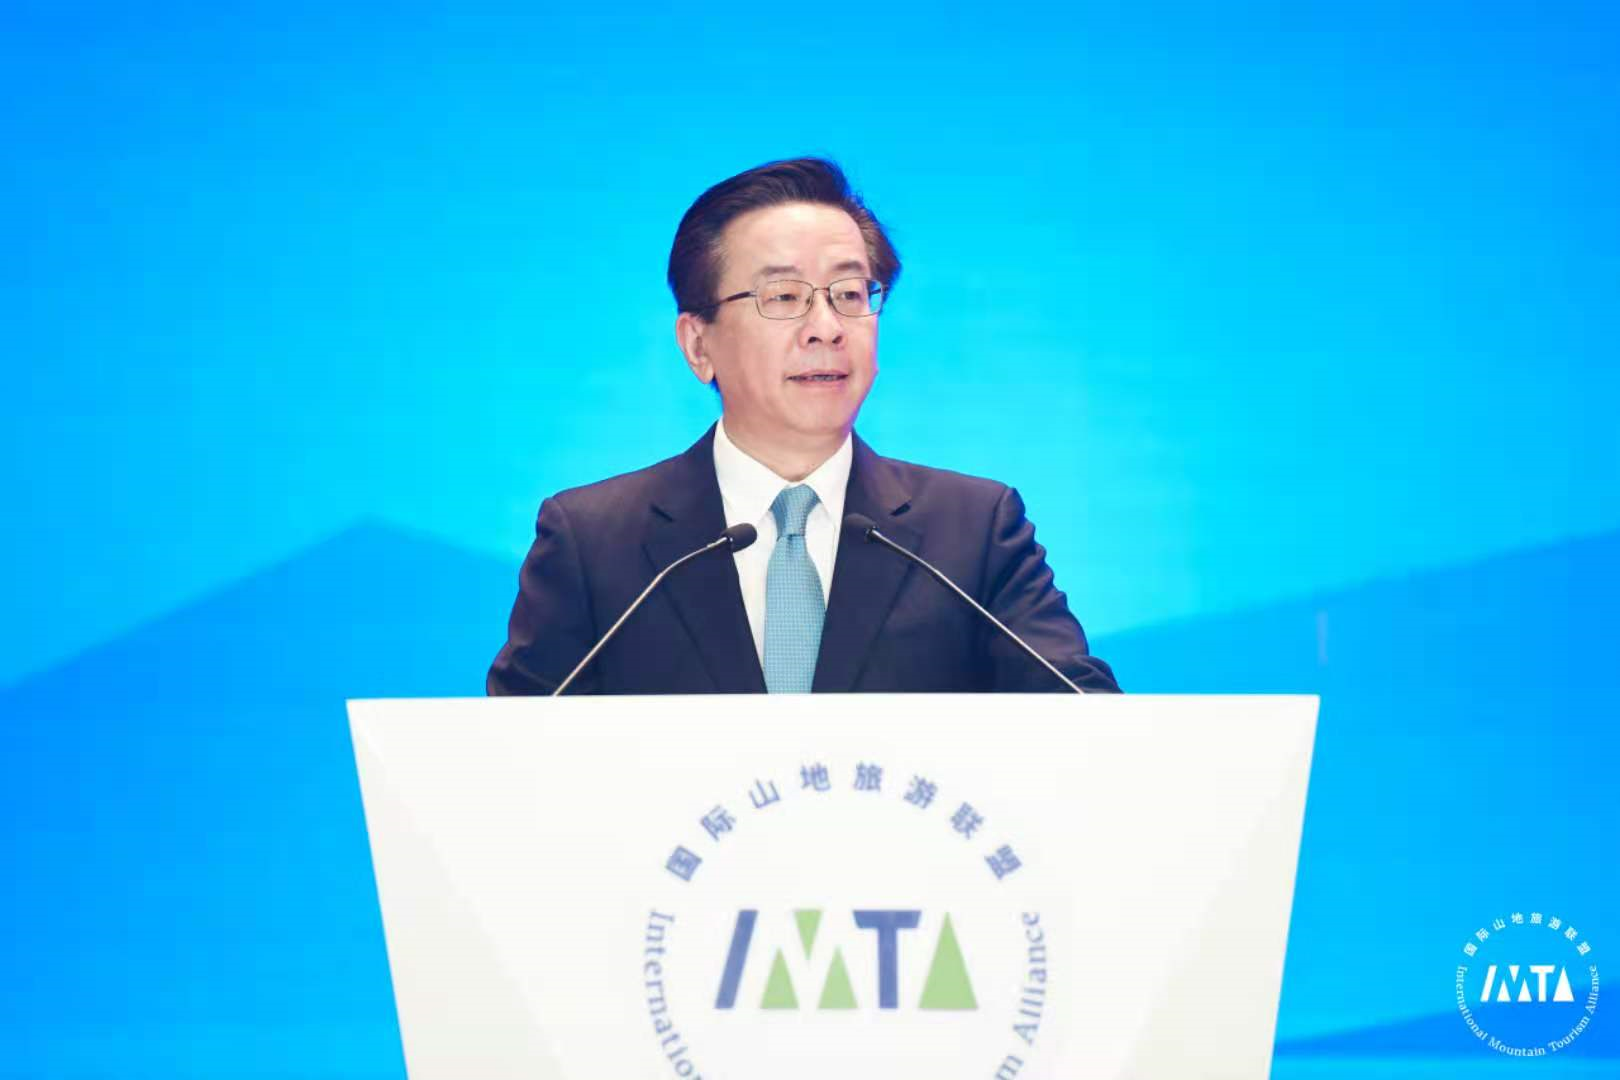 2020 IMTA Annual Conference | Address by Lu Yongzheng 